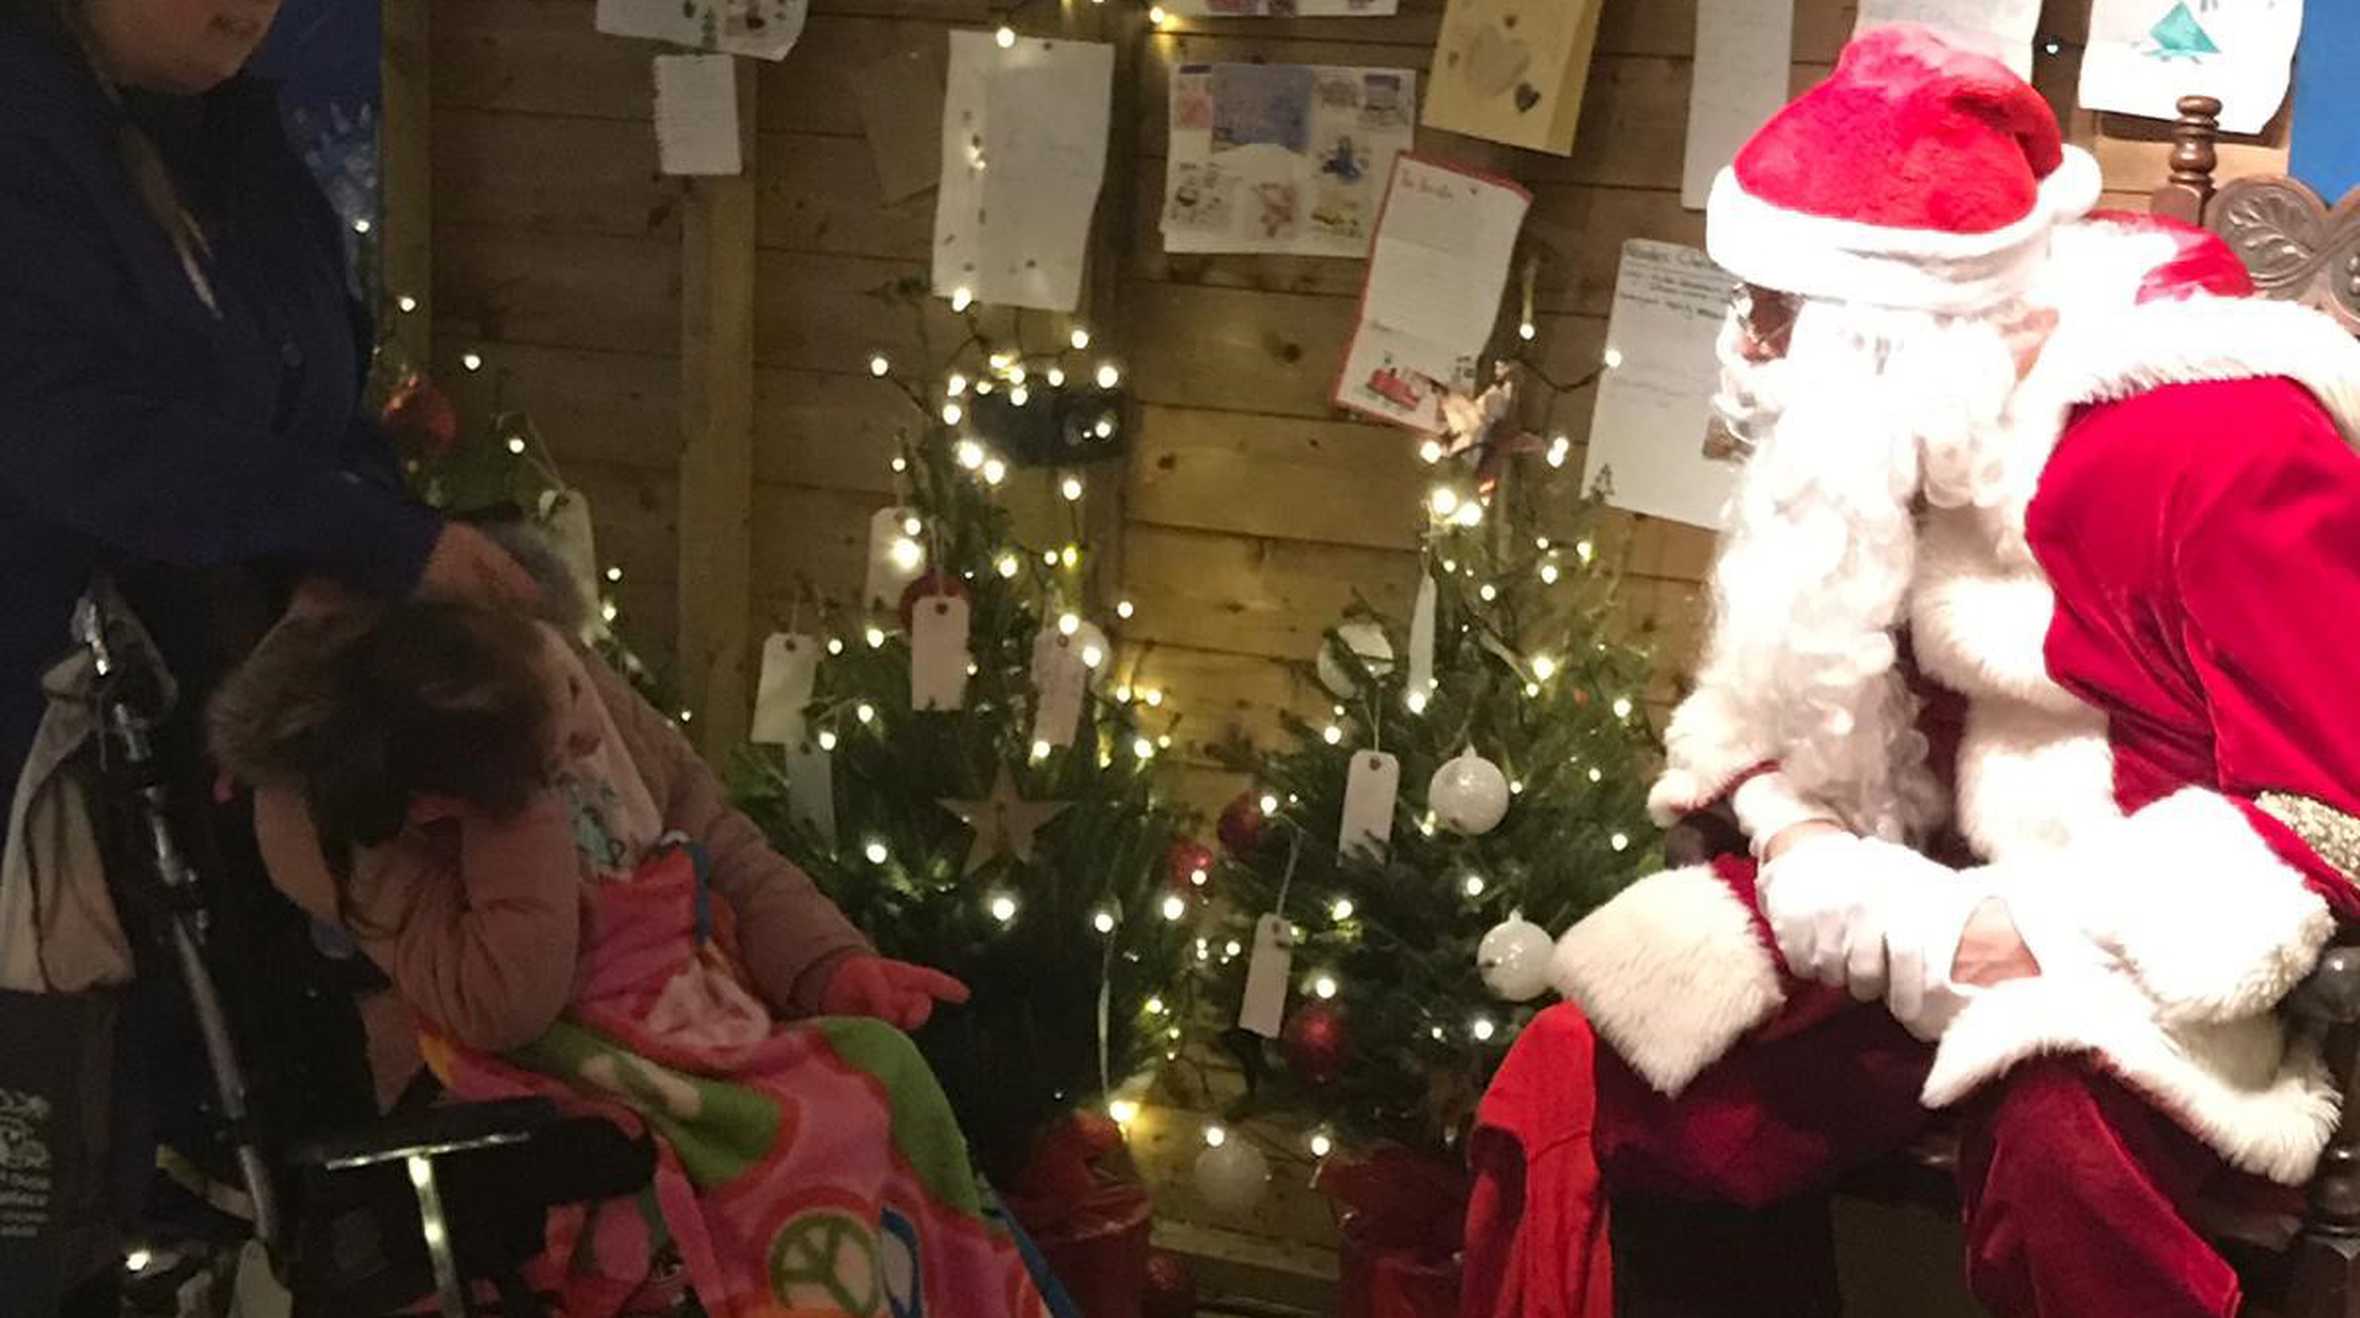 Hope meeting Santa on her wish